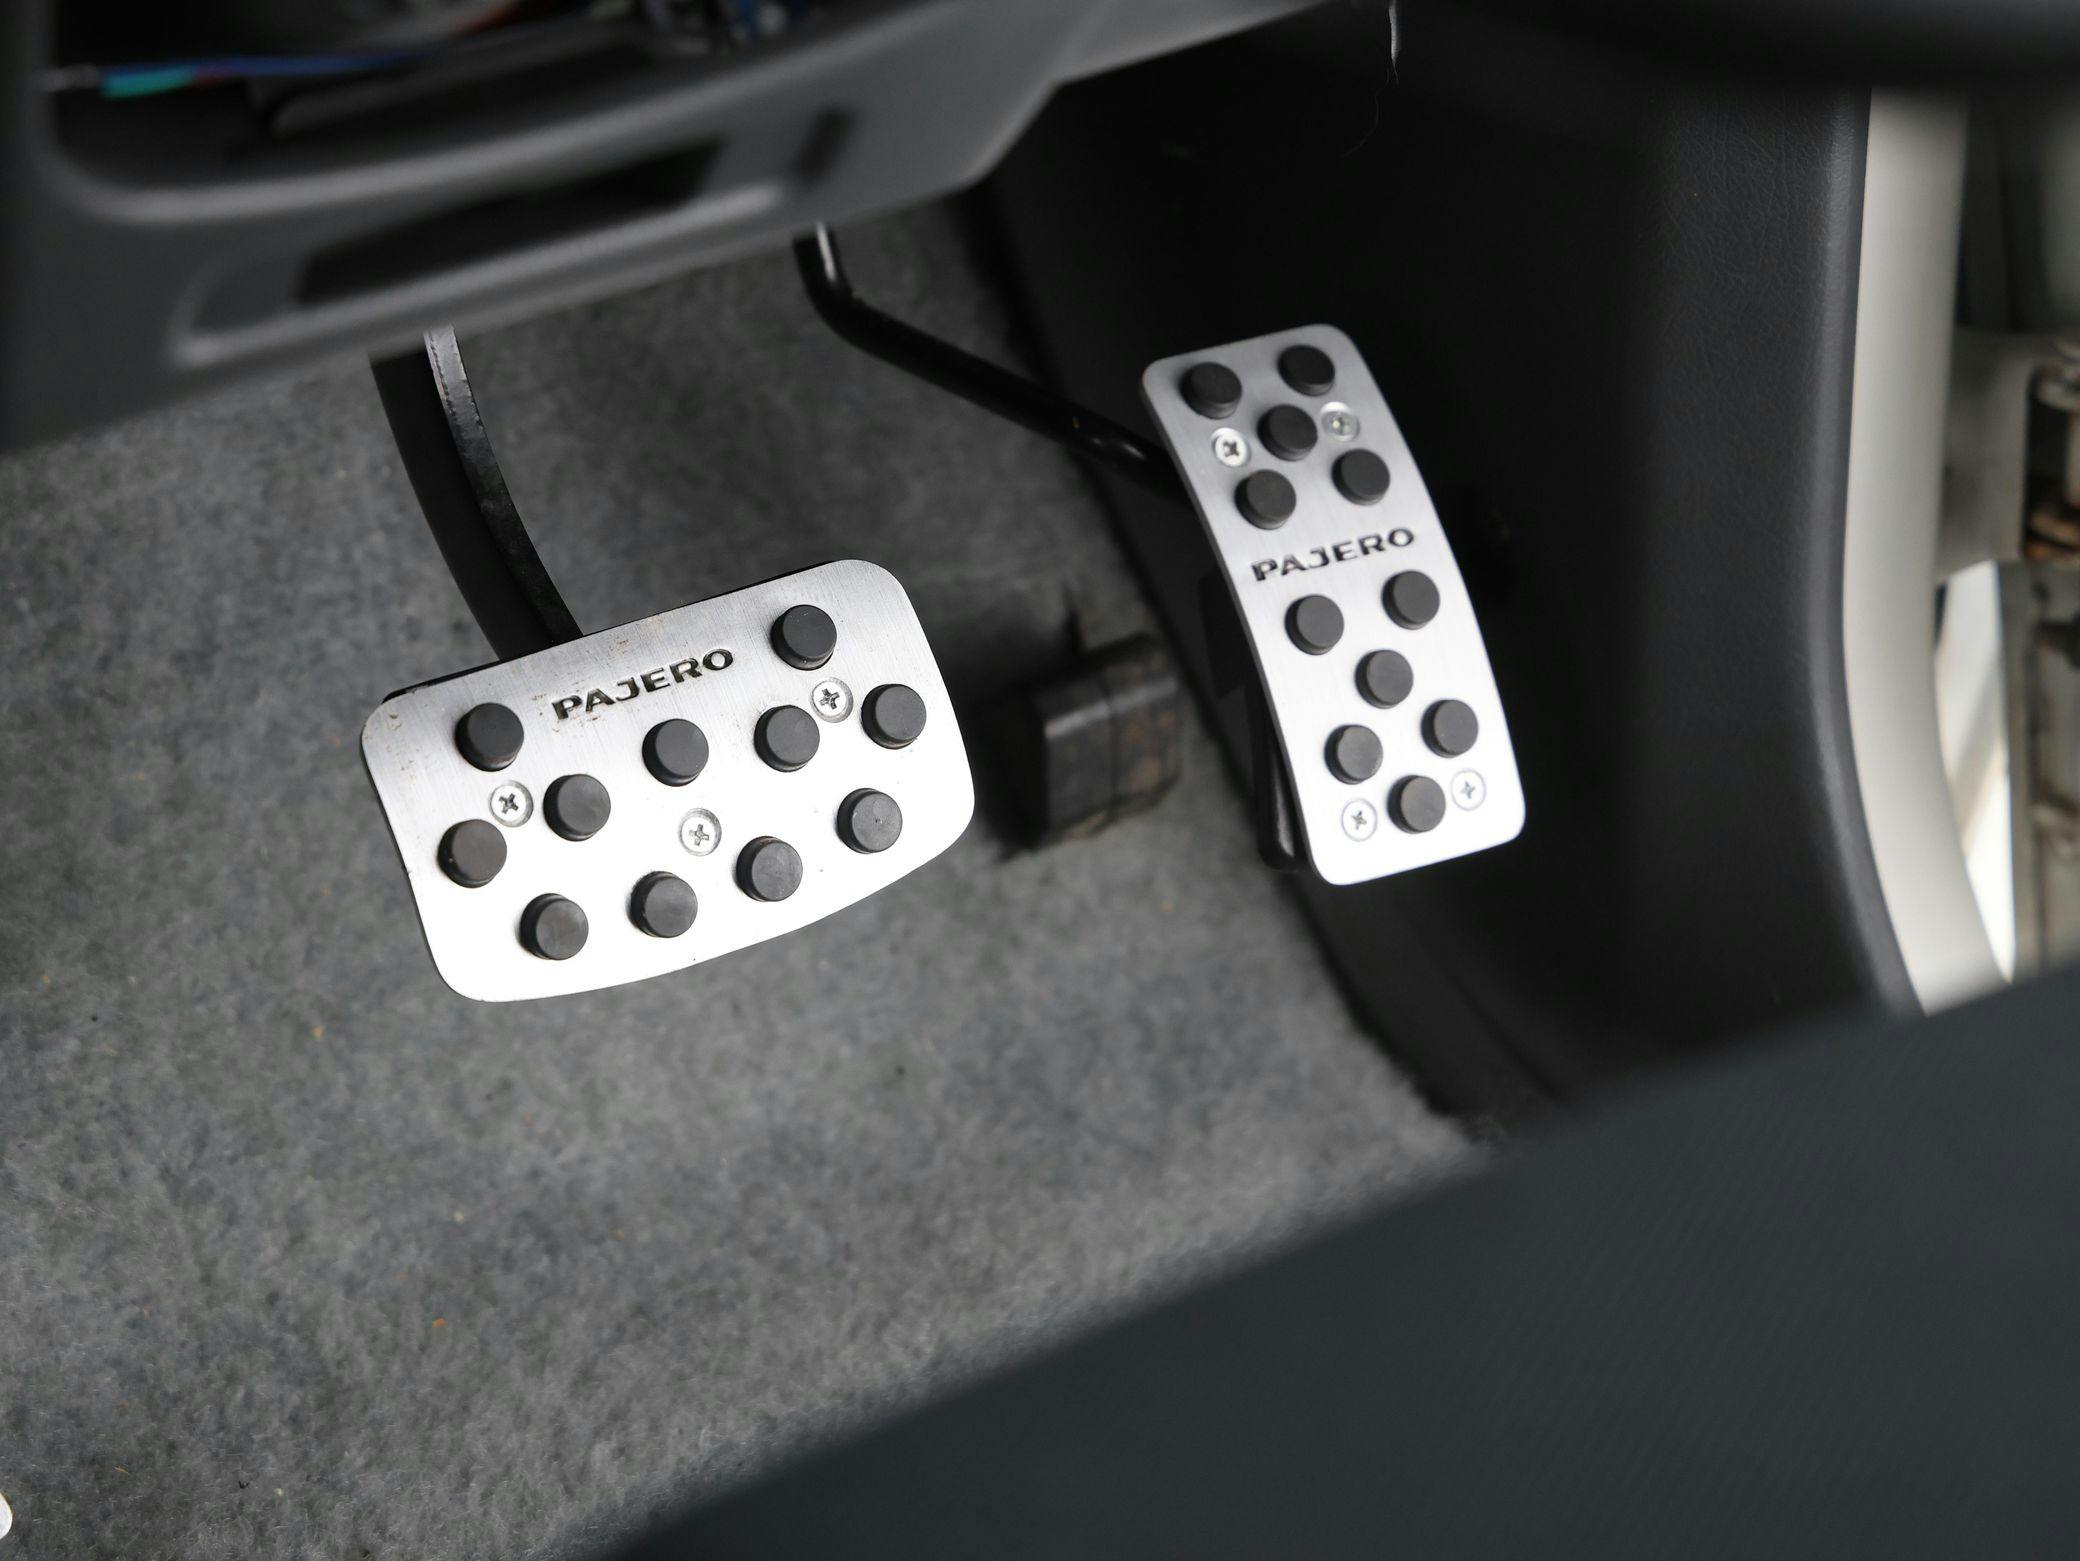 1998 Mitsubishi Pajero Evolution interior foot pedals